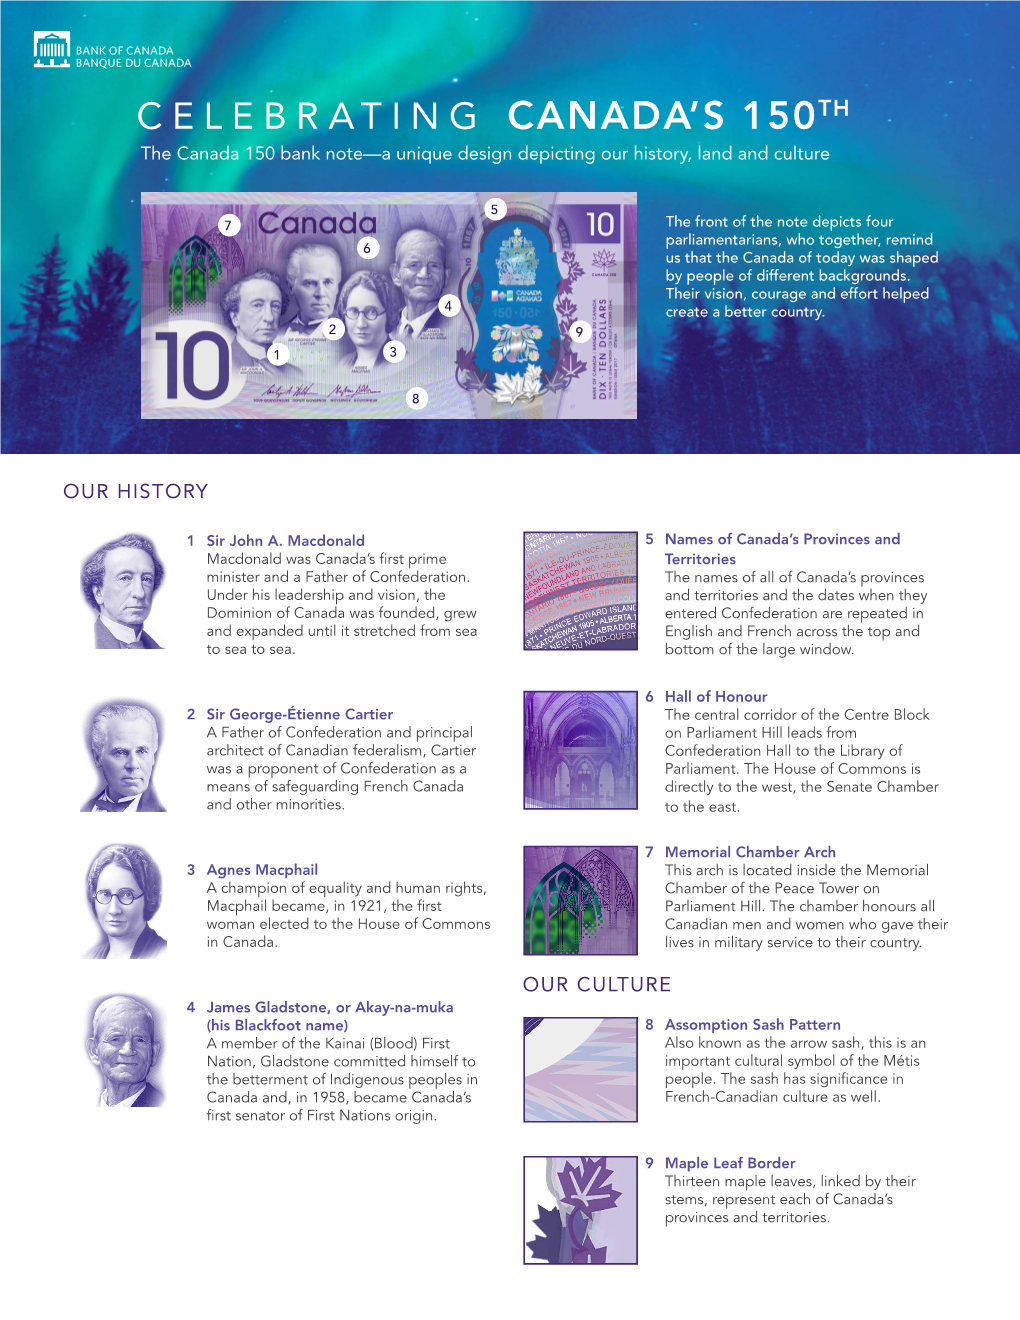 Canada 150 Bank Note Design Fact Sheet